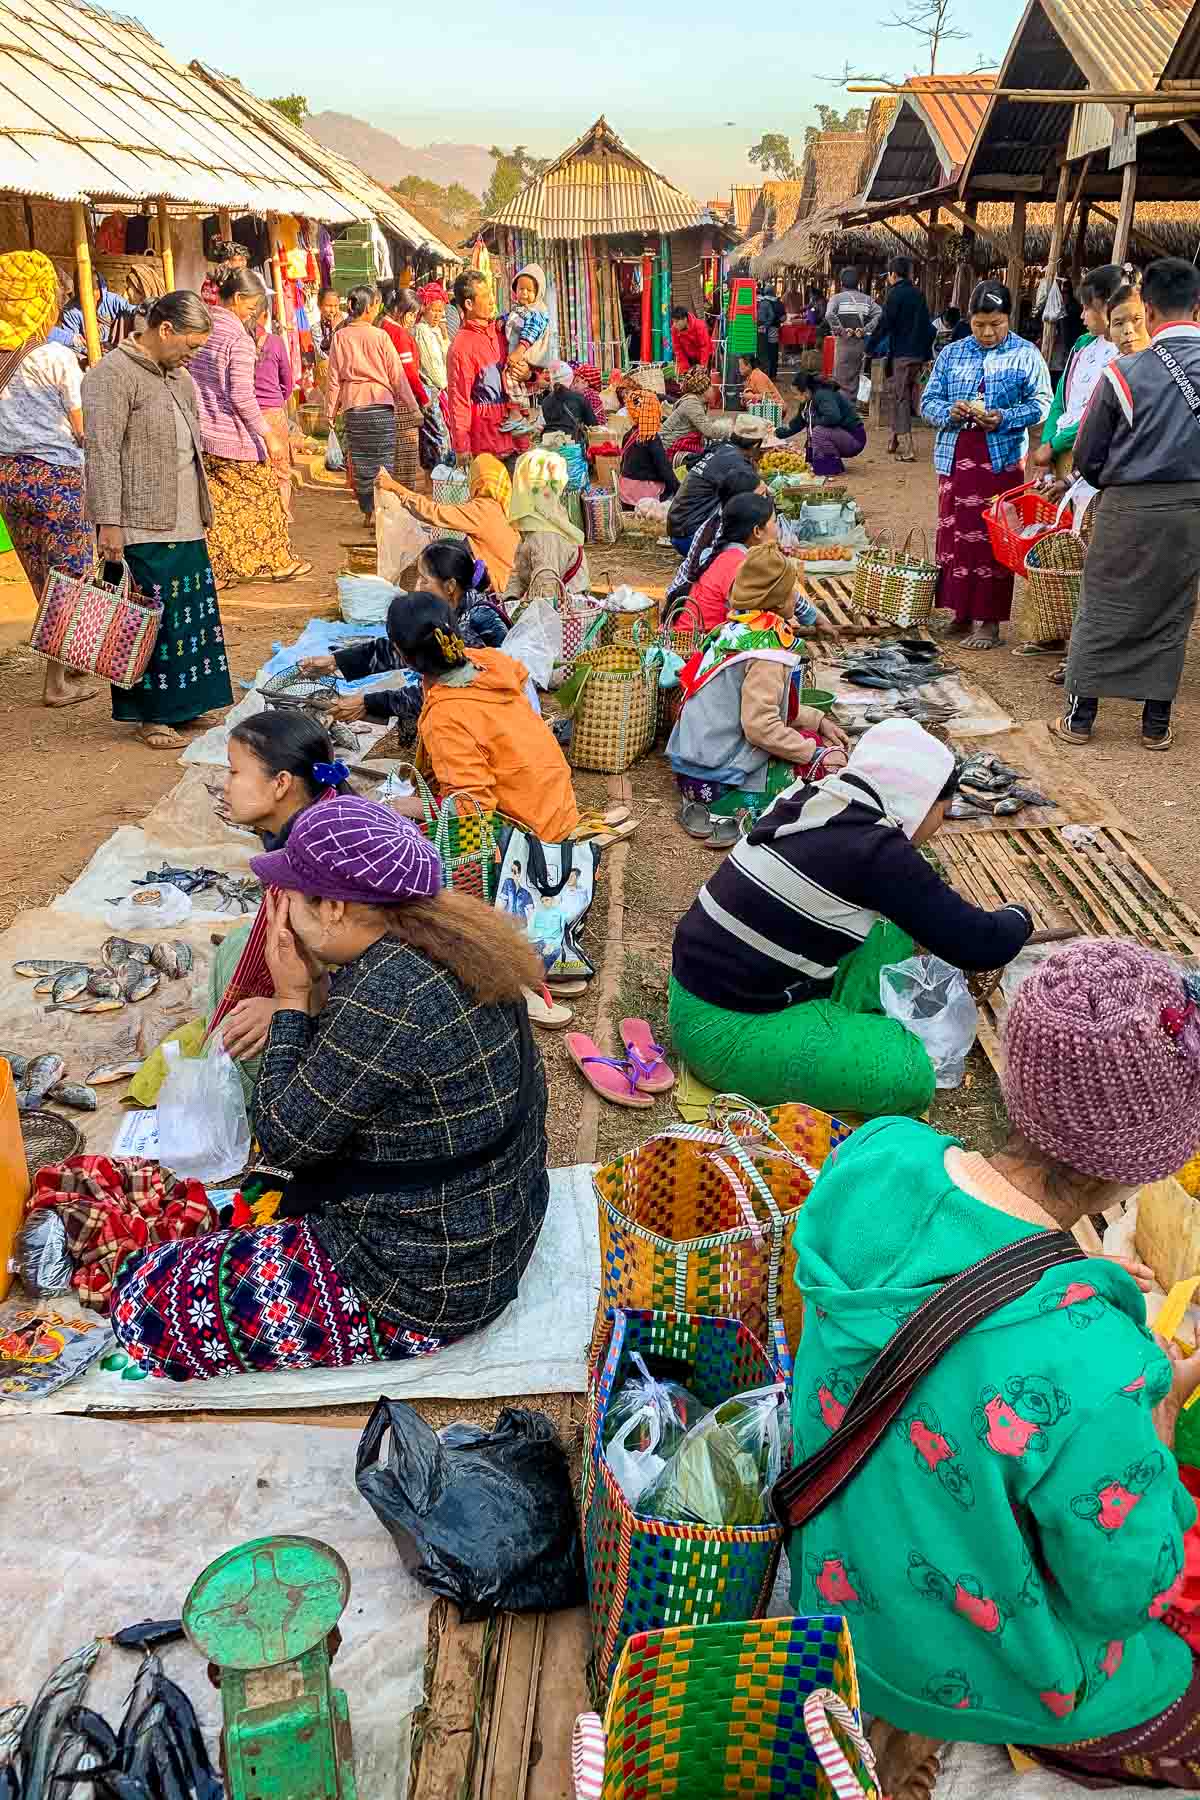 Five Day Market at Inle Lake, Myanmar